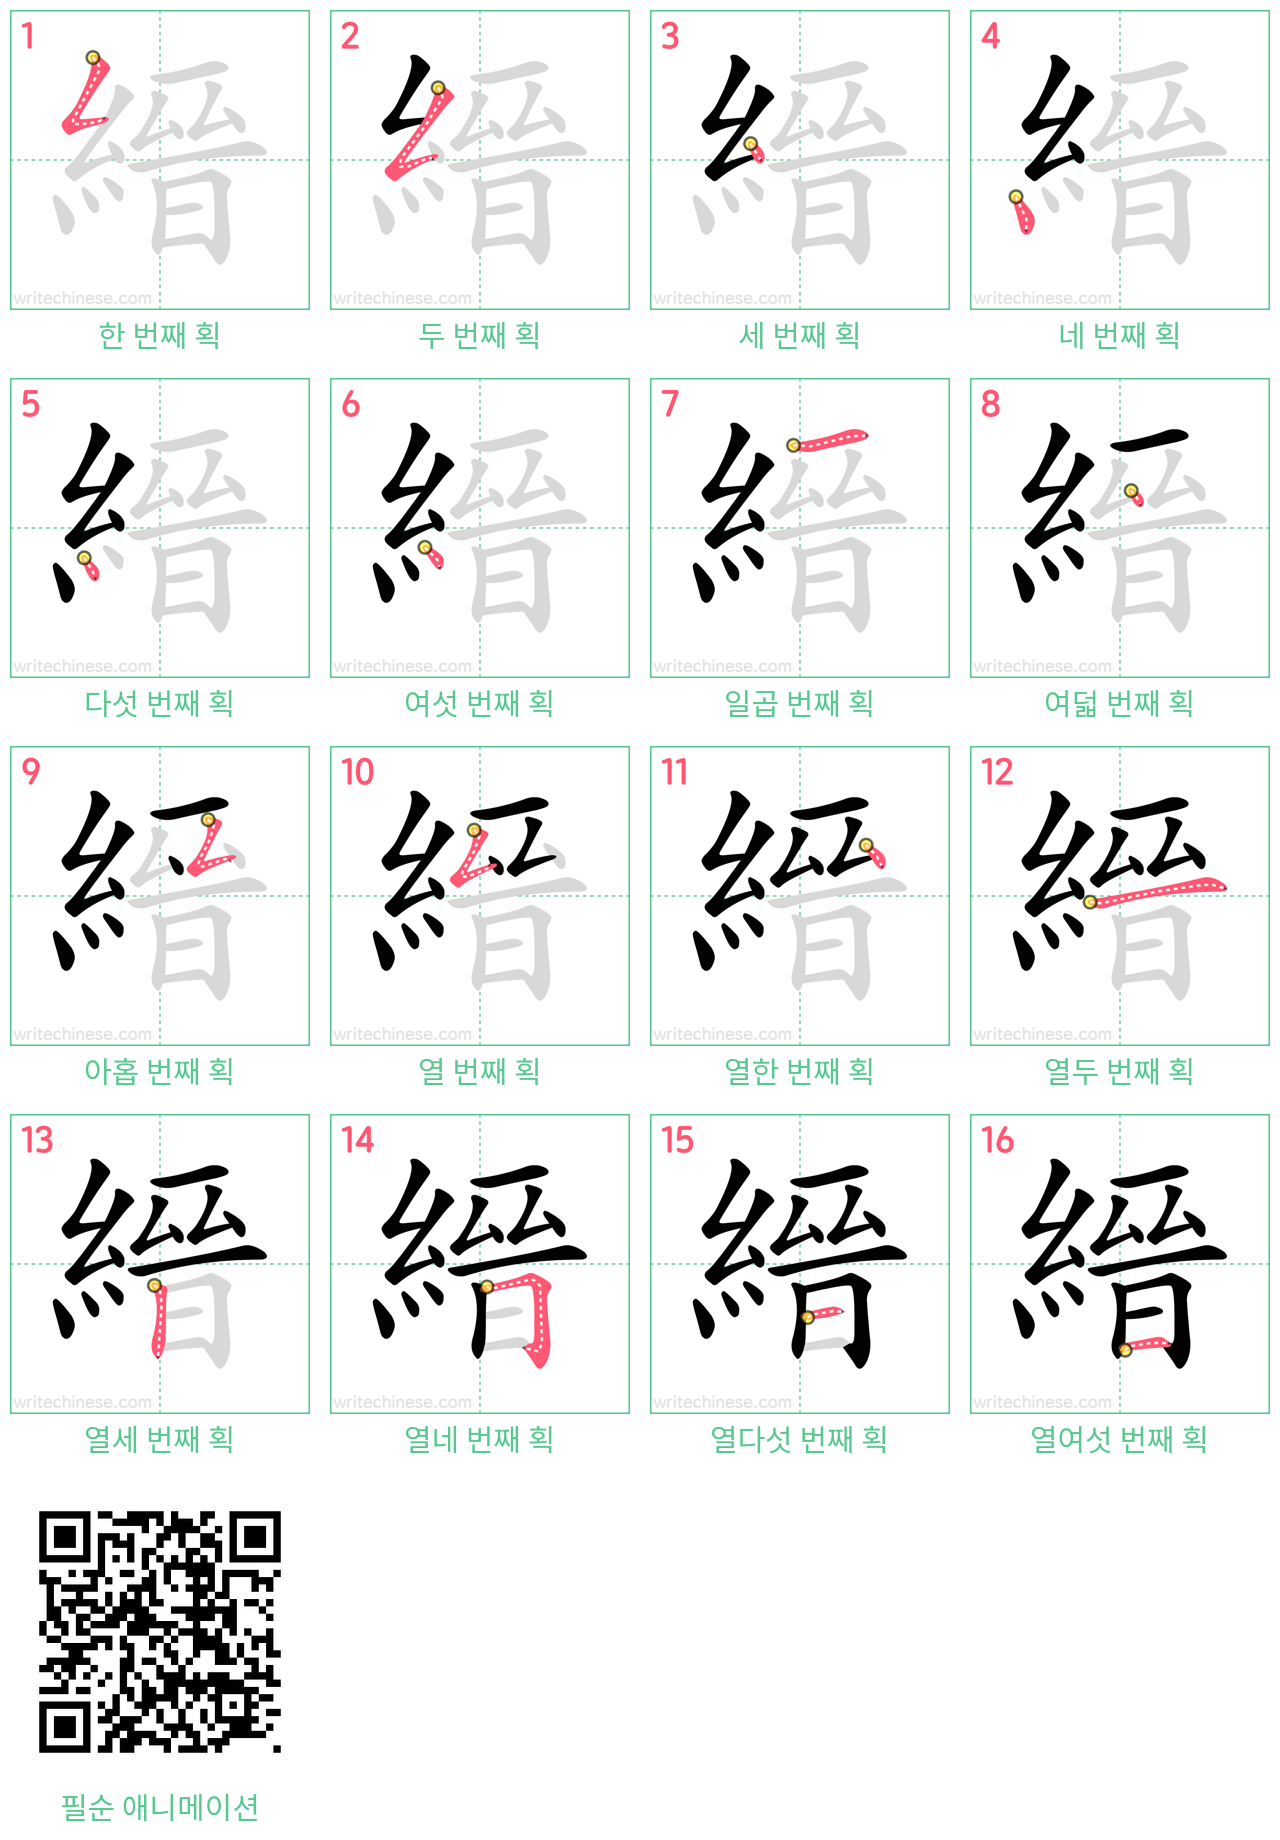 縉 step-by-step stroke order diagrams